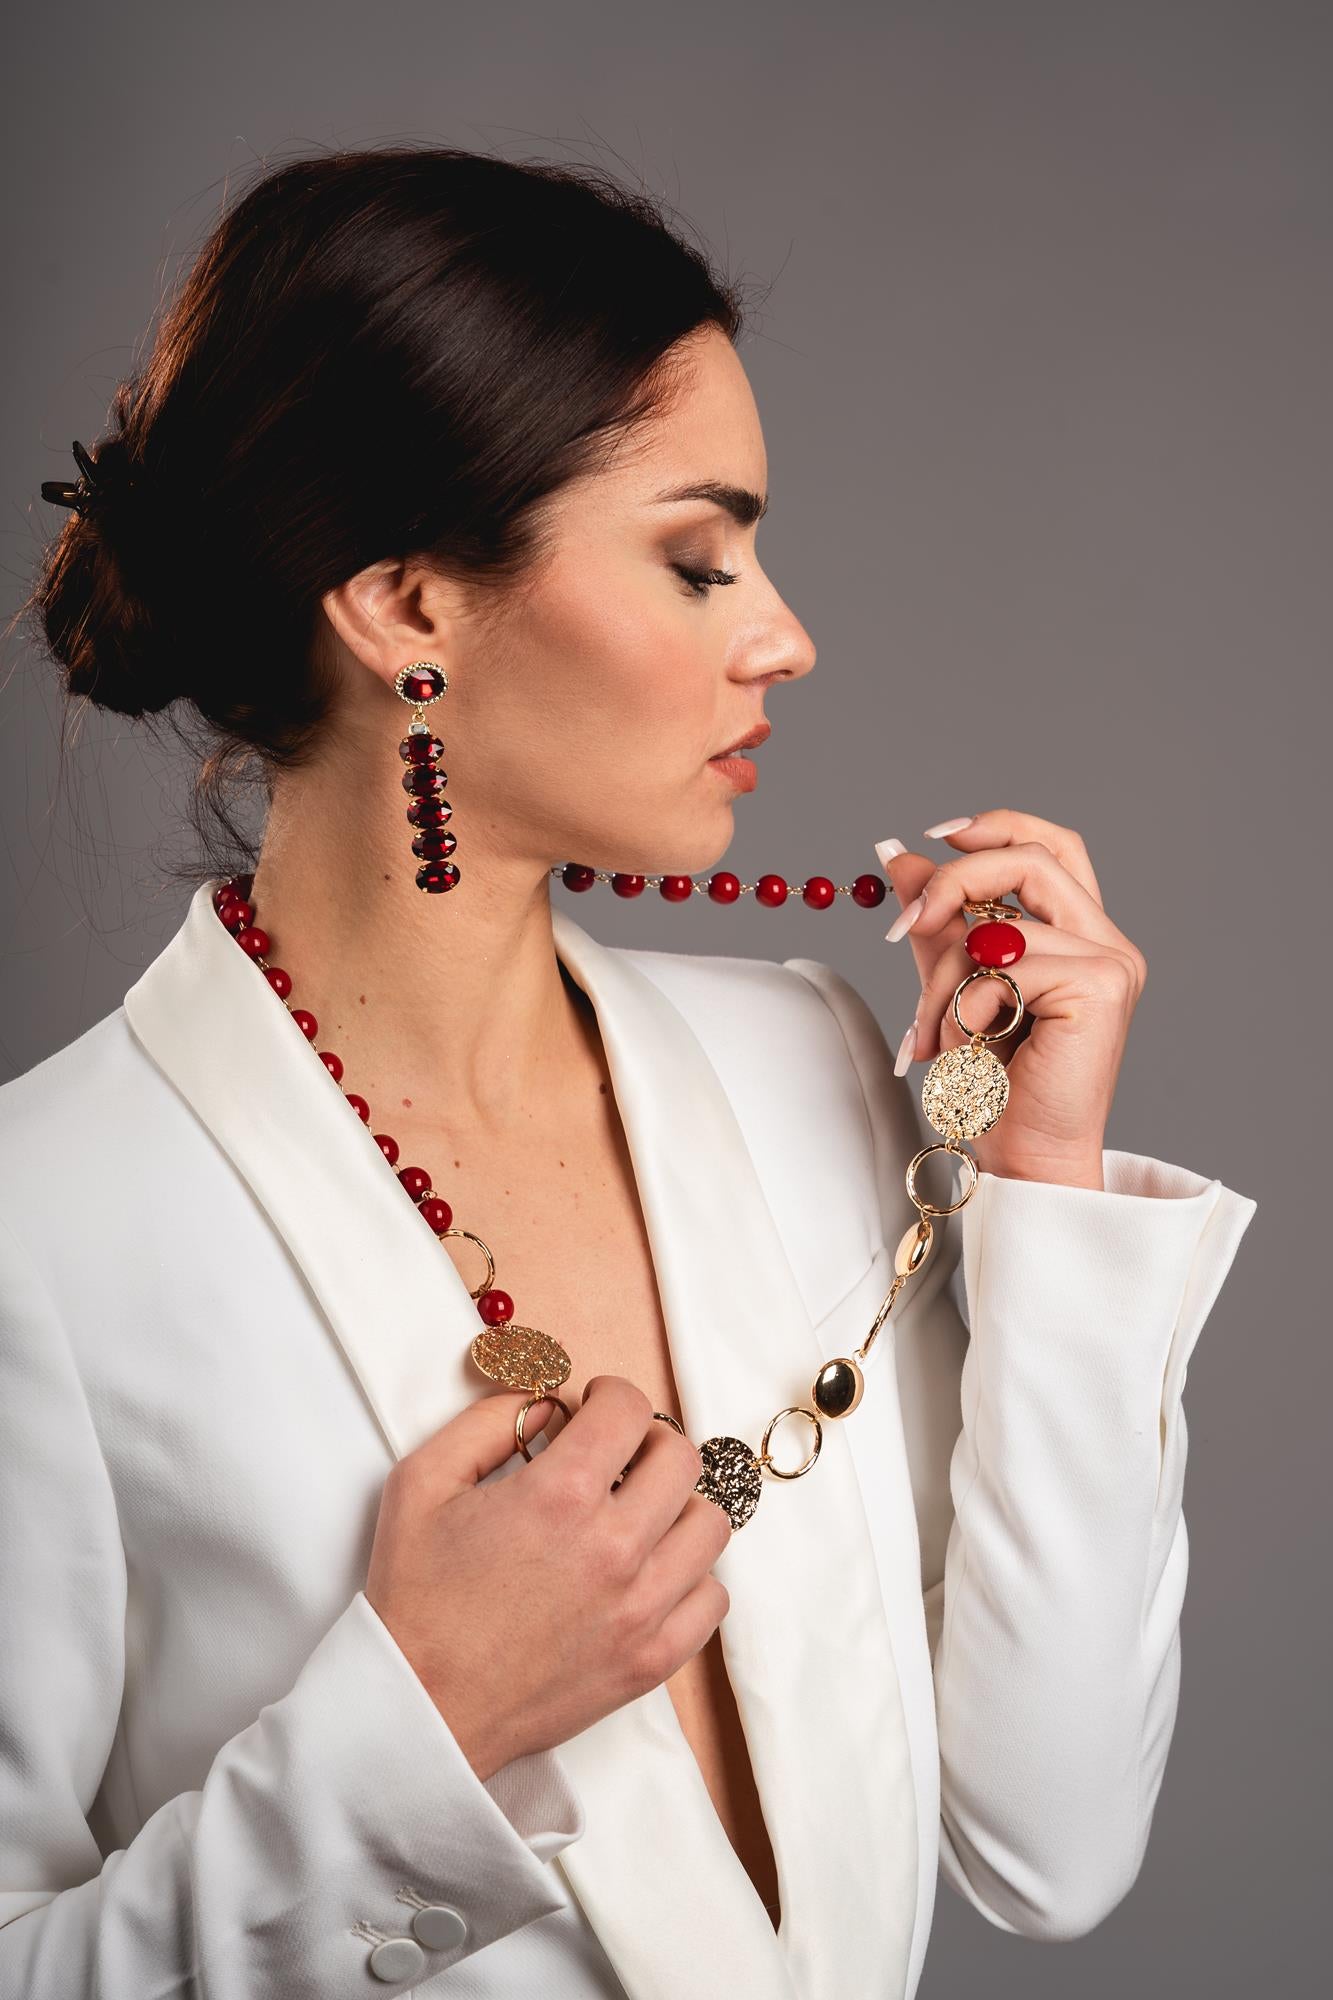 Collana con perle in acrilico rosse - Mya Accessories